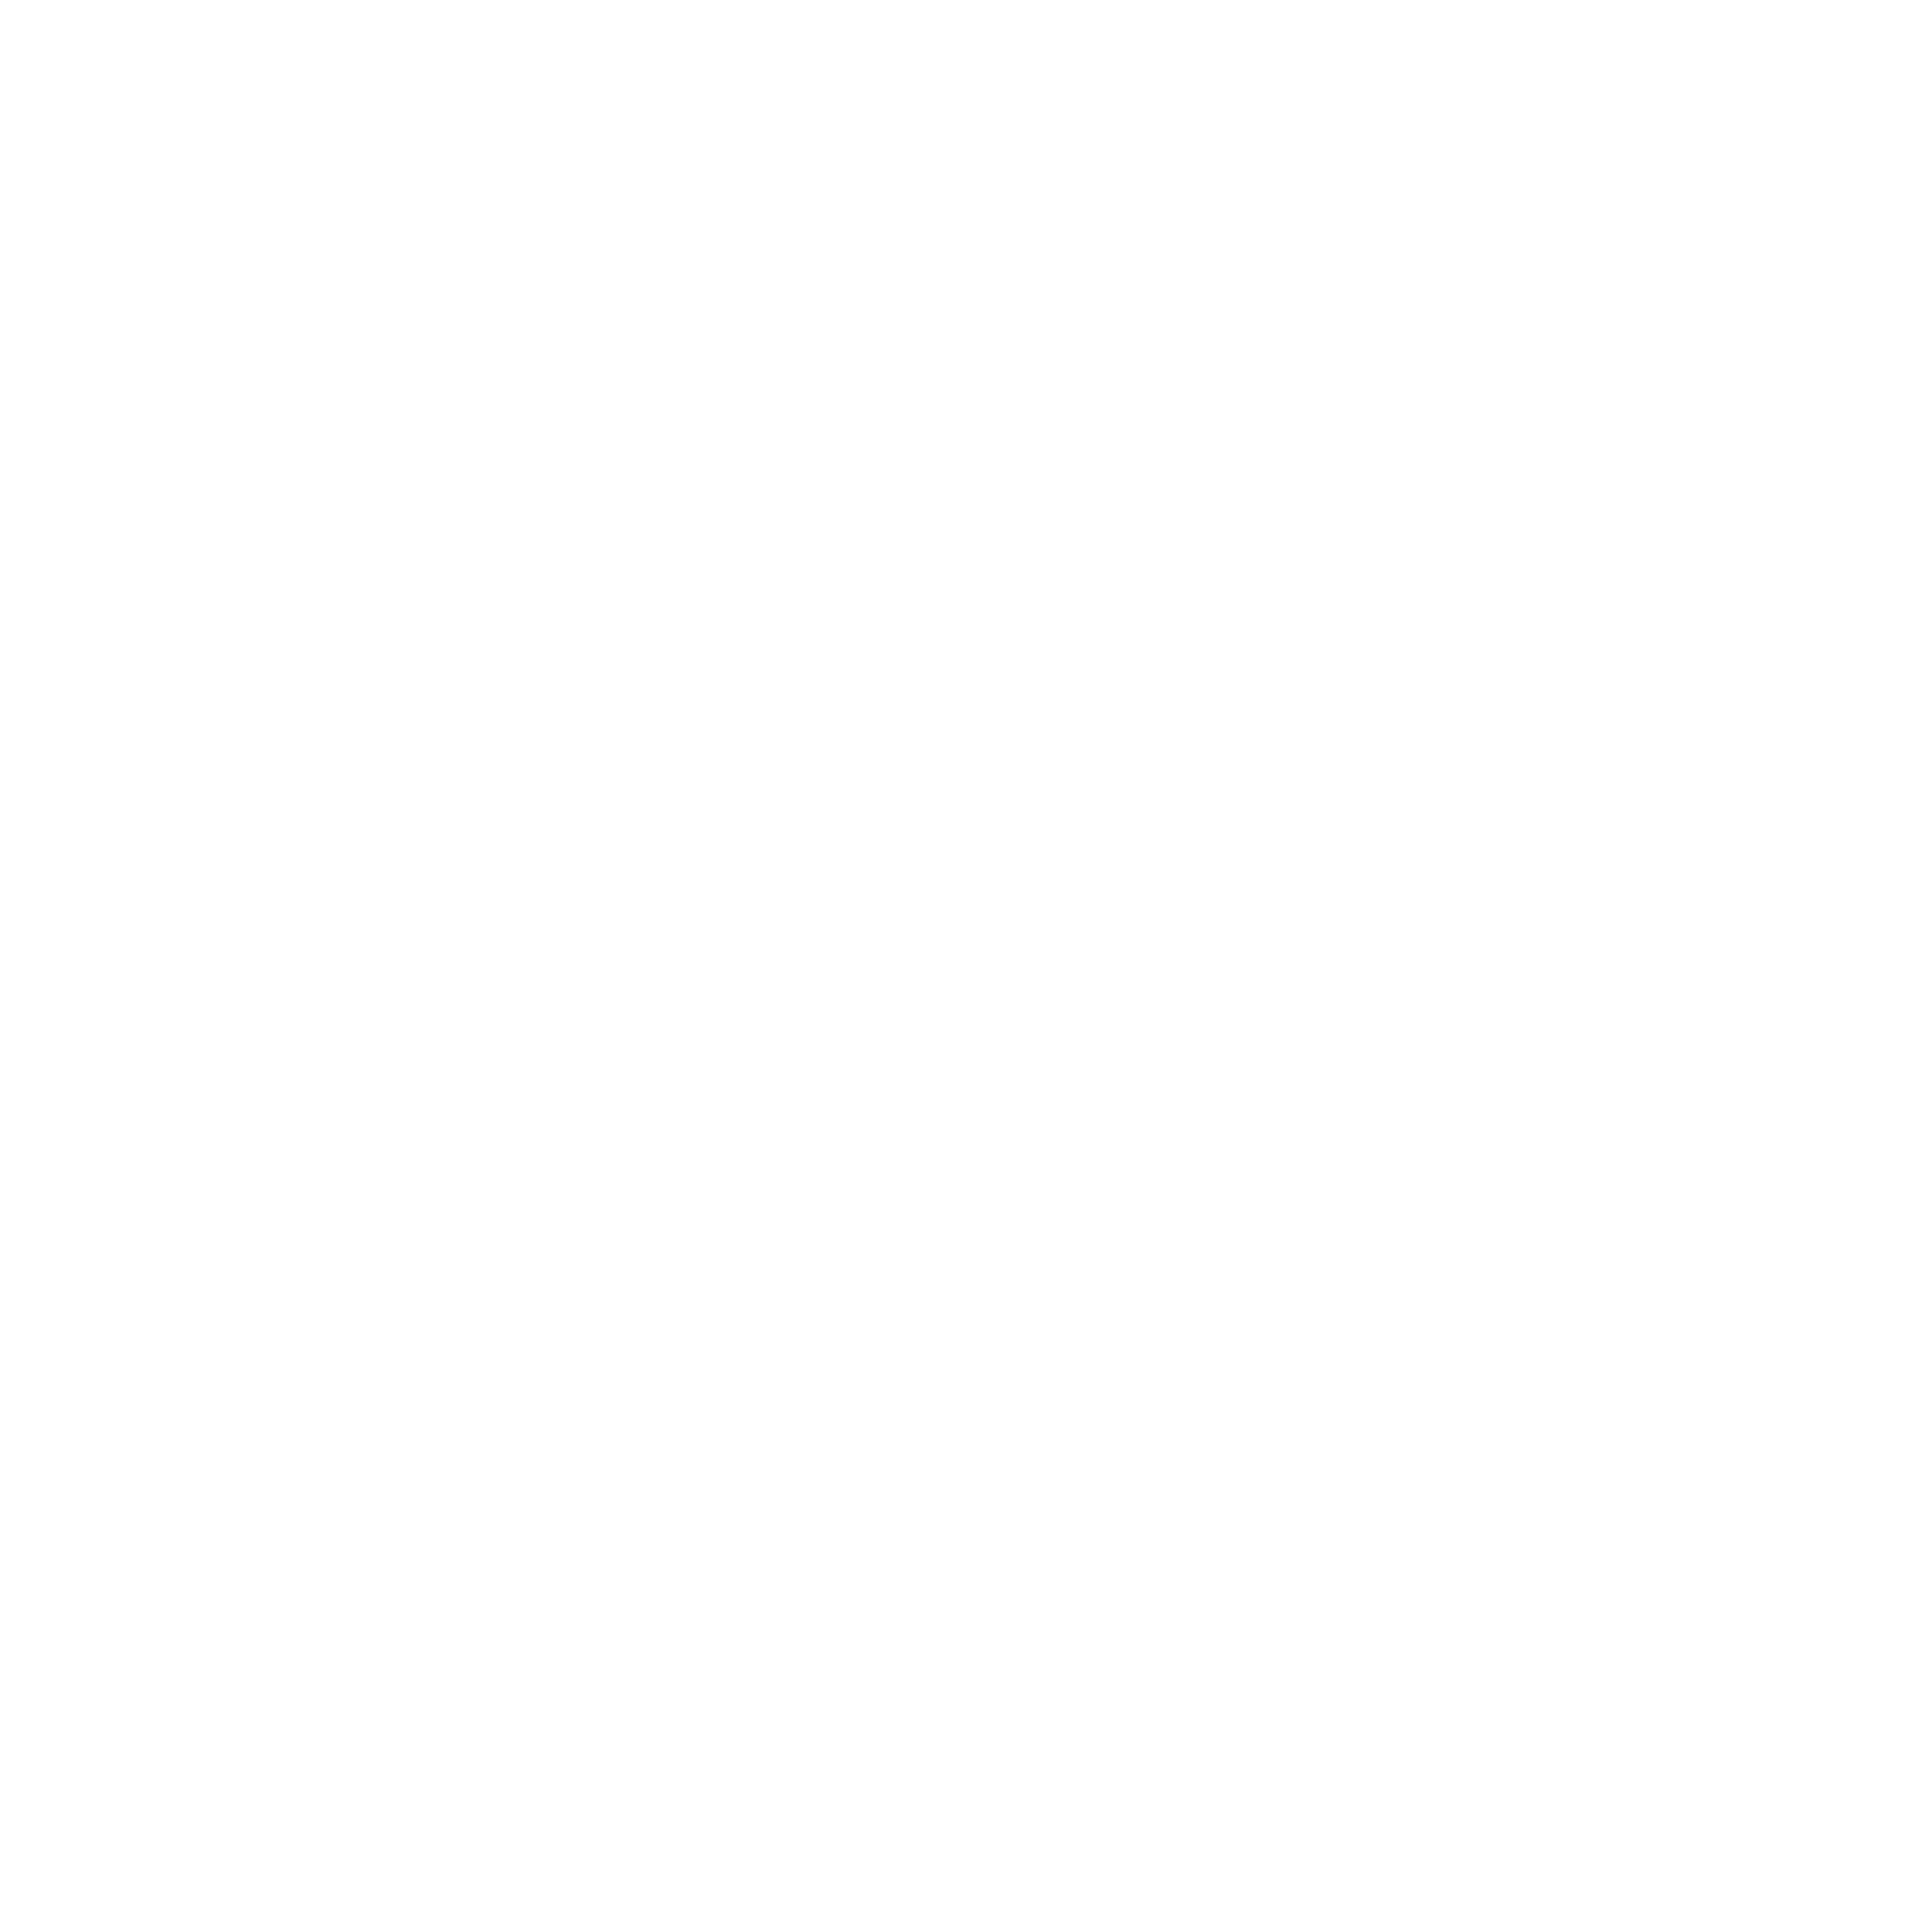 Logotipo del Gobierno del estado de Jalisco